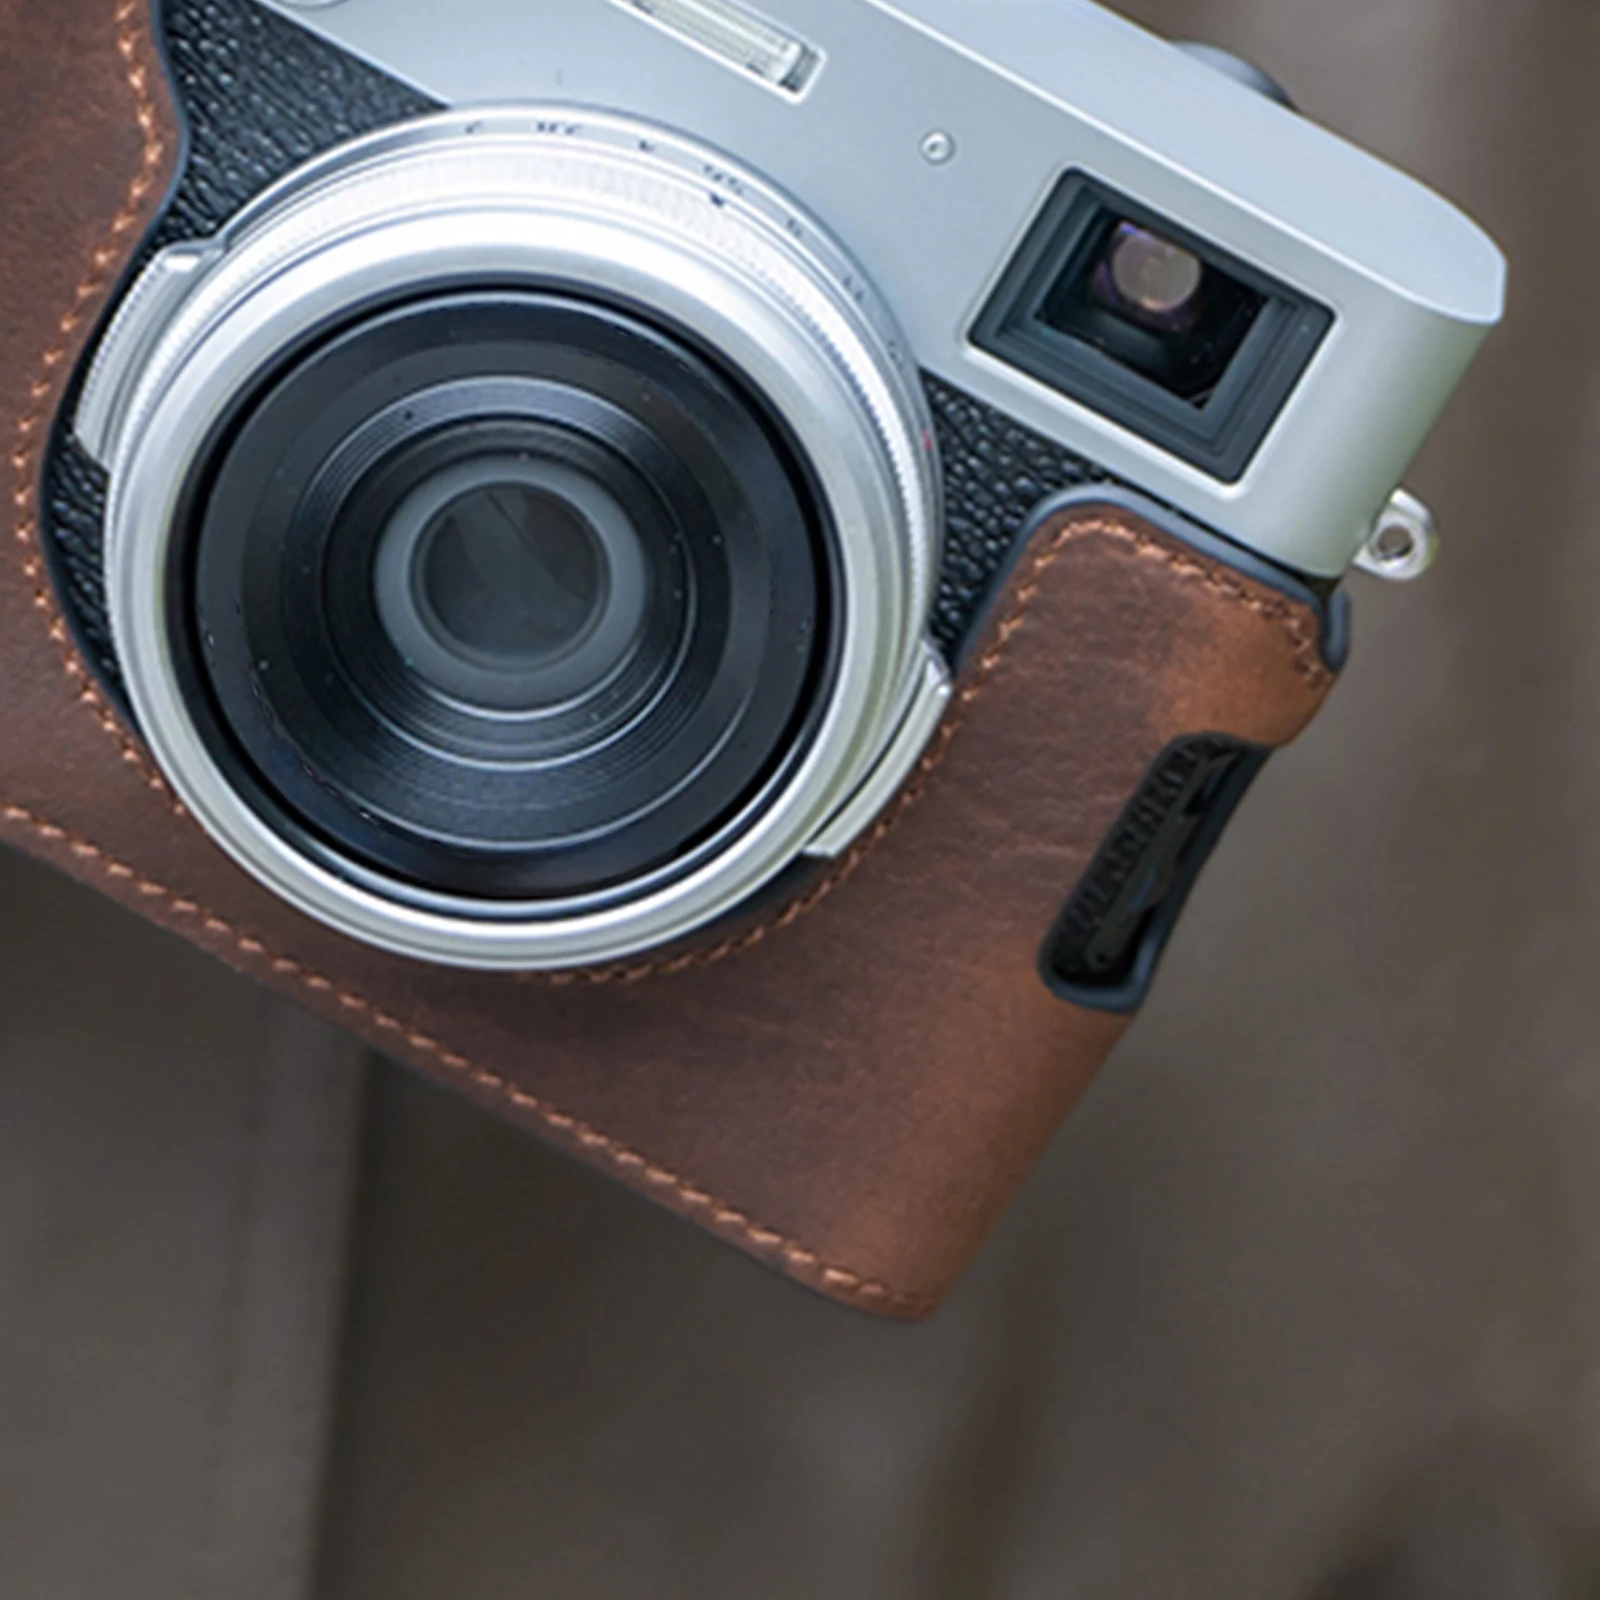 Ledertasche Kit für Fujifilm x100vi High-End Halbkörper hand gefertigte Kamera tasche grün braun schwarz